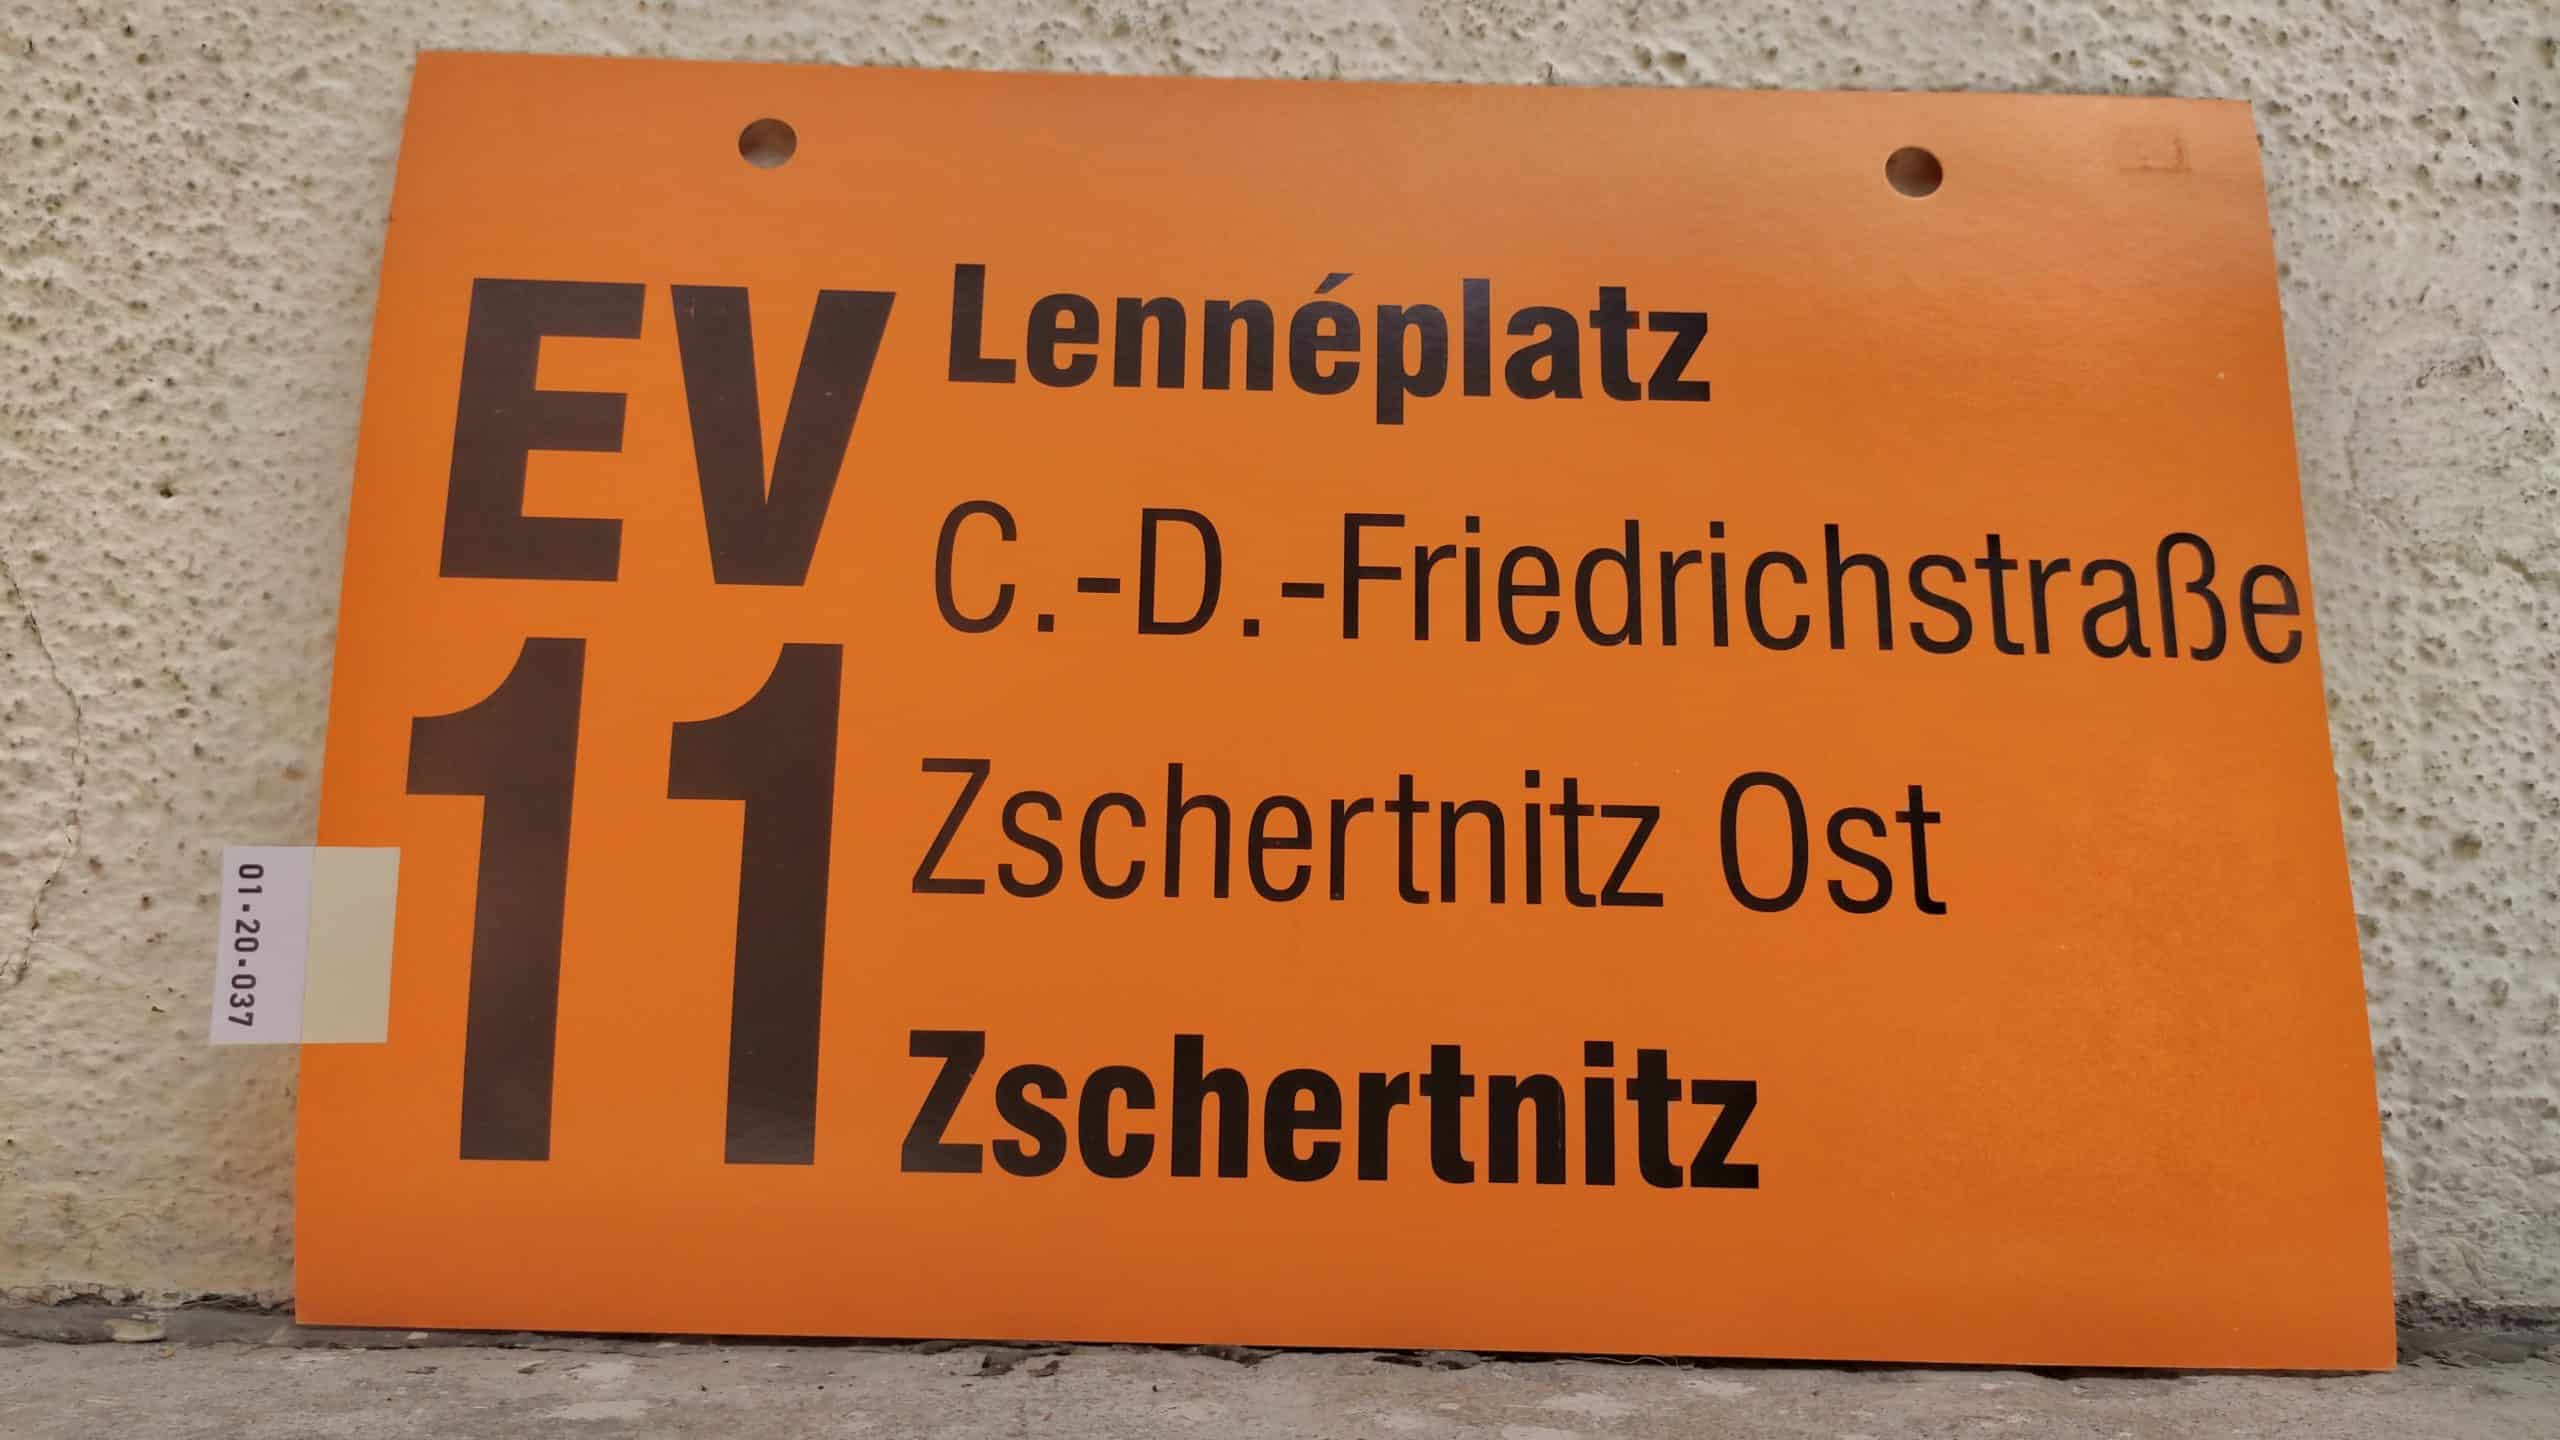 EV 11 Lennéplatz – Zschertnitz